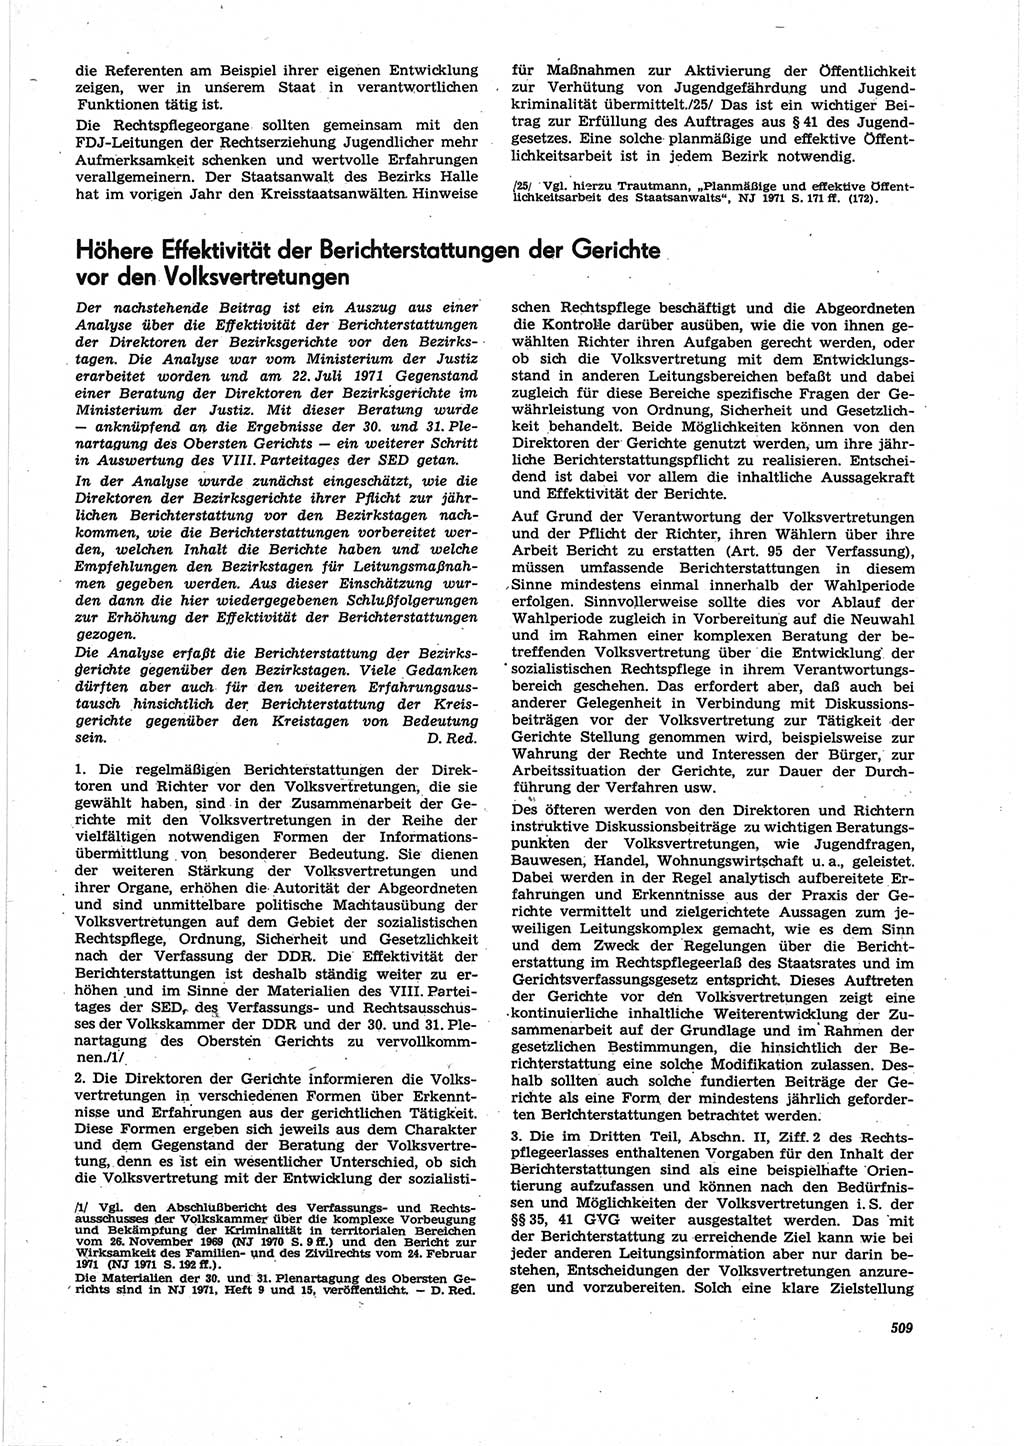 Neue Justiz (NJ), Zeitschrift für Recht und Rechtswissenschaft [Deutsche Demokratische Republik (DDR)], 25. Jahrgang 1971, Seite 509 (NJ DDR 1971, S. 509)